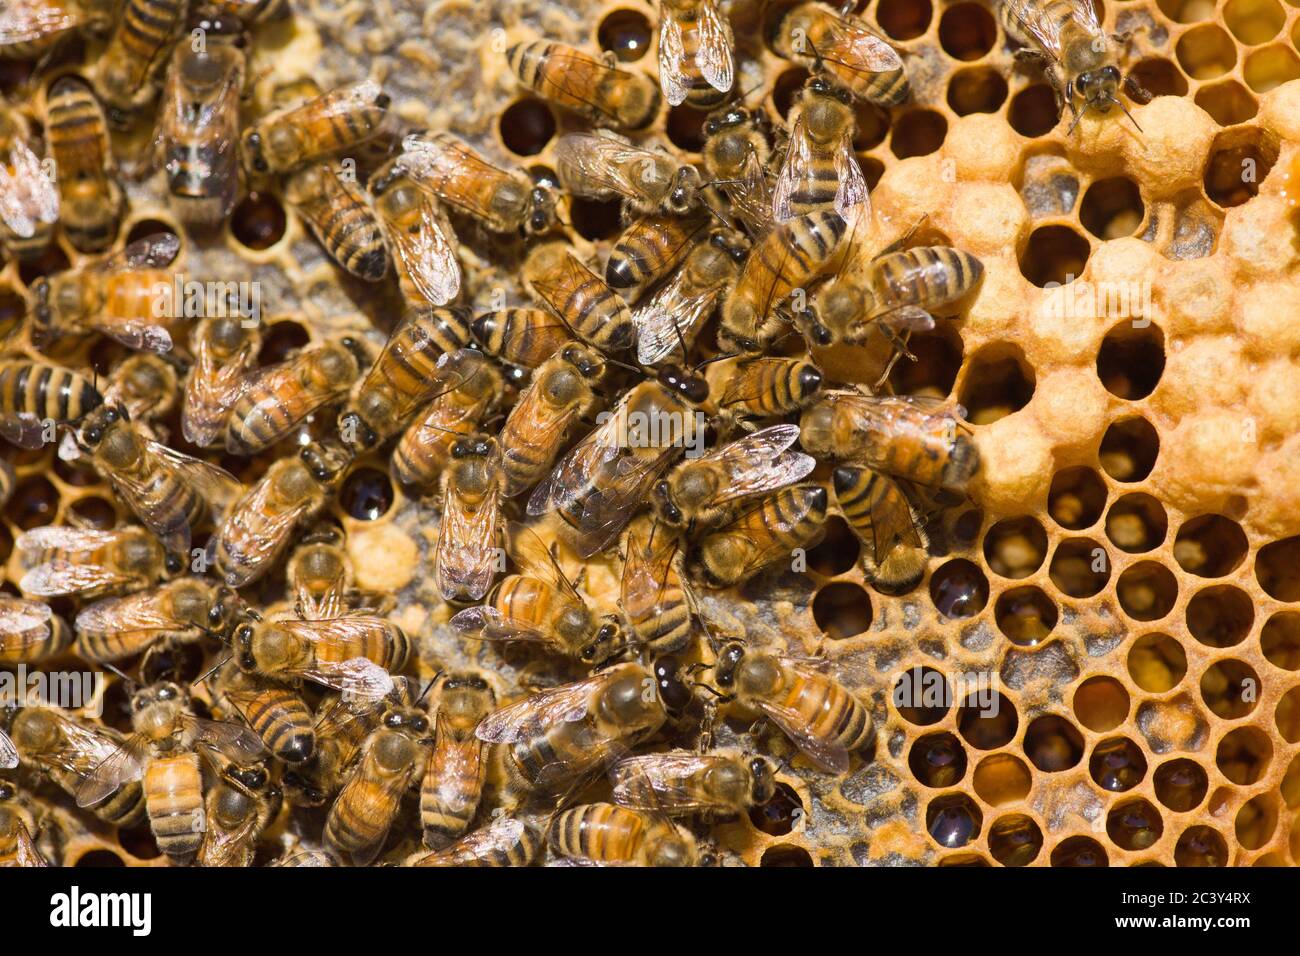 Gros plan du cadre montrant deux abeilles de drone au milieu du cadre, ainsi que d'autres abeilles ouvrières, le miel et les petits en haut à droite (c blanchâtre Banque D'Images